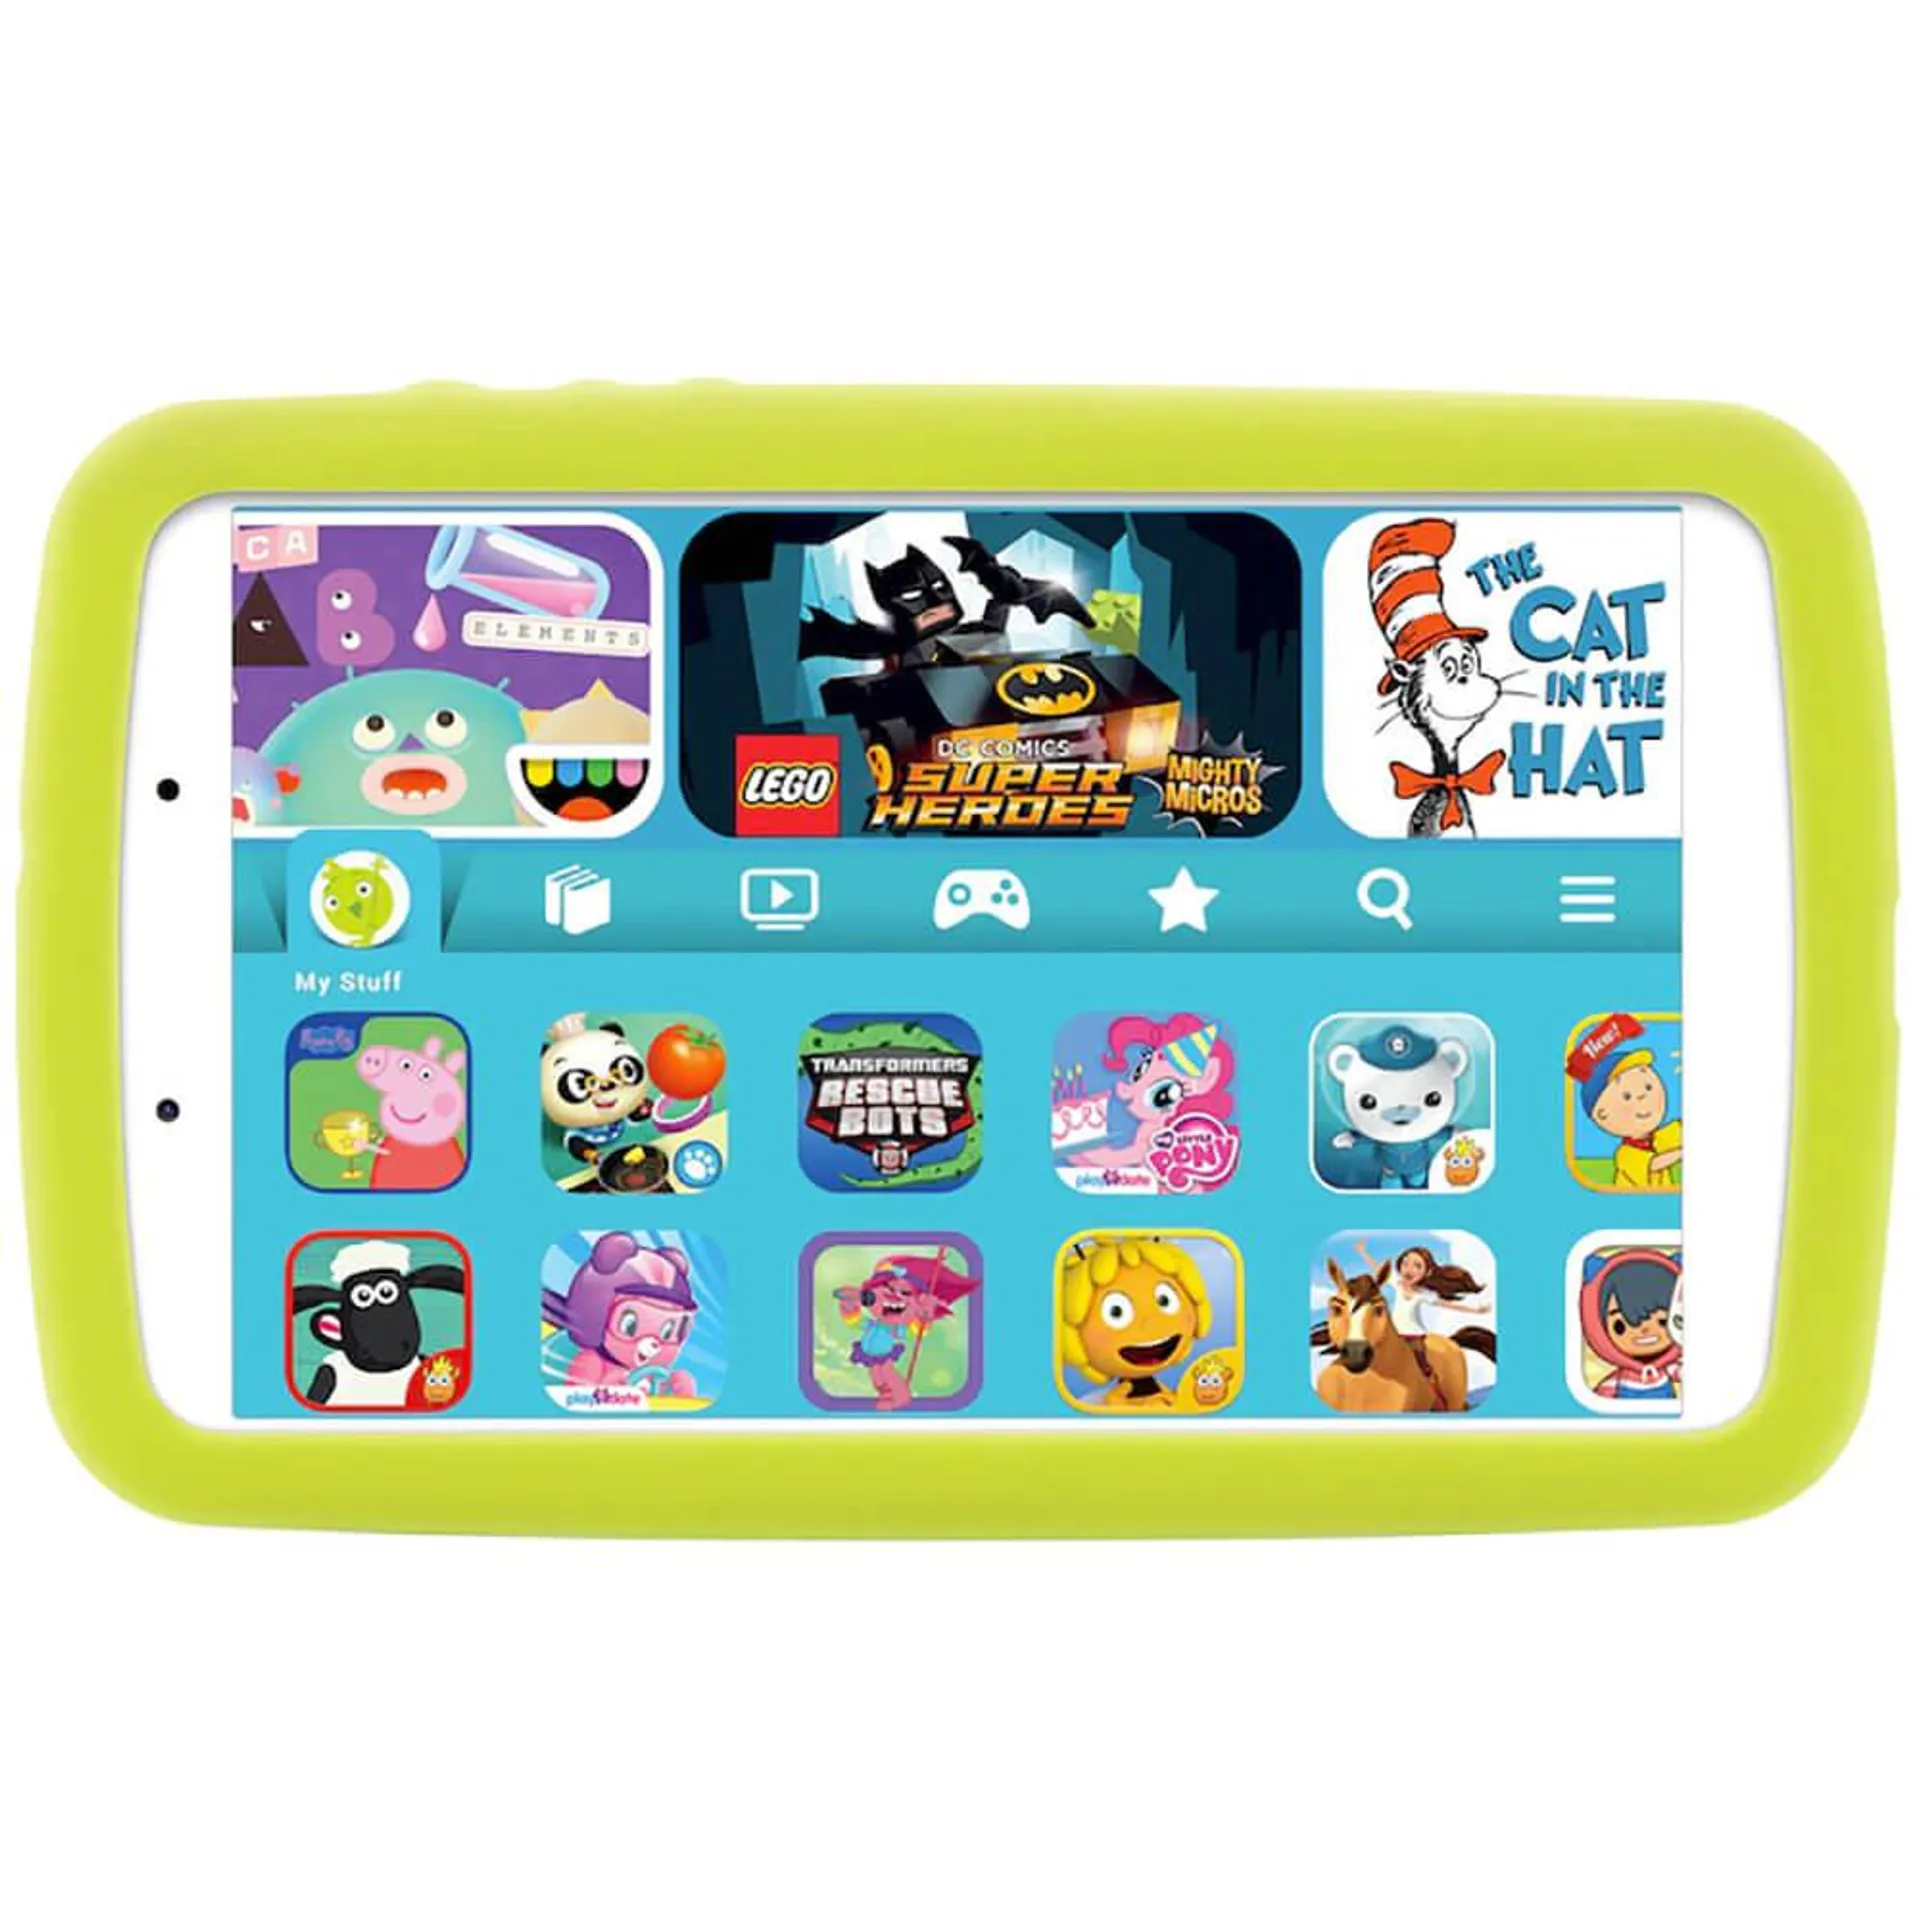 8 inch Galaxy Tab A Kids Edition - 32GB - Silver